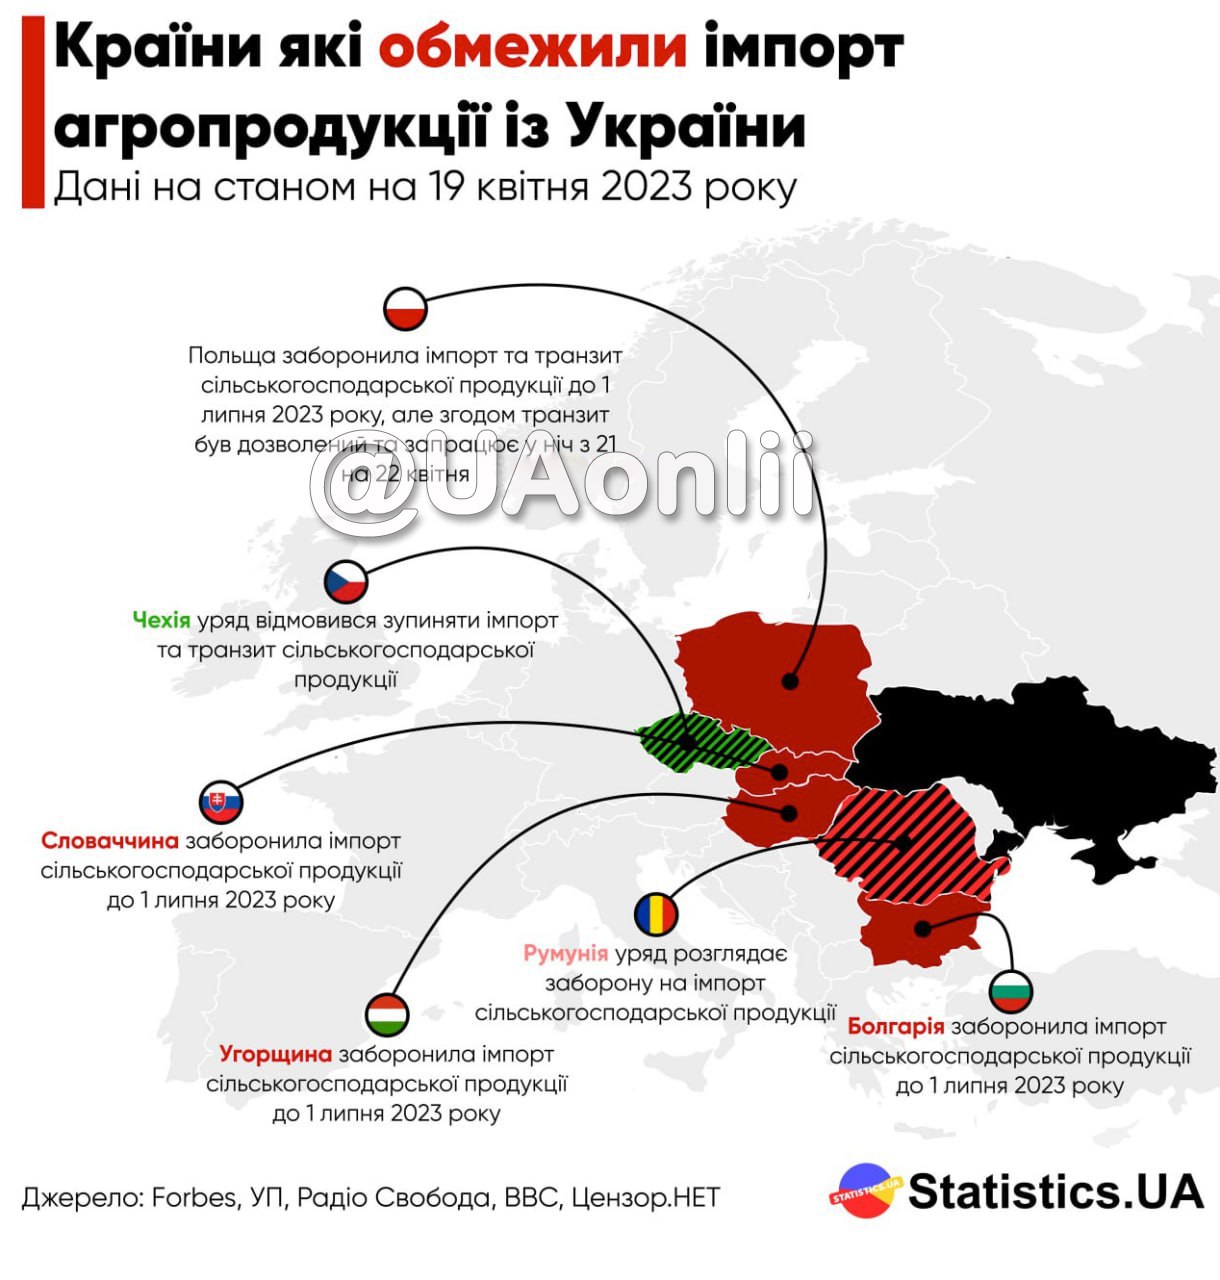 Европейский союз готовит экстренные ограничения на импорт украинского зерна в Польшу, Венгрию, Румынию, Словакию и Болгарию, — FT